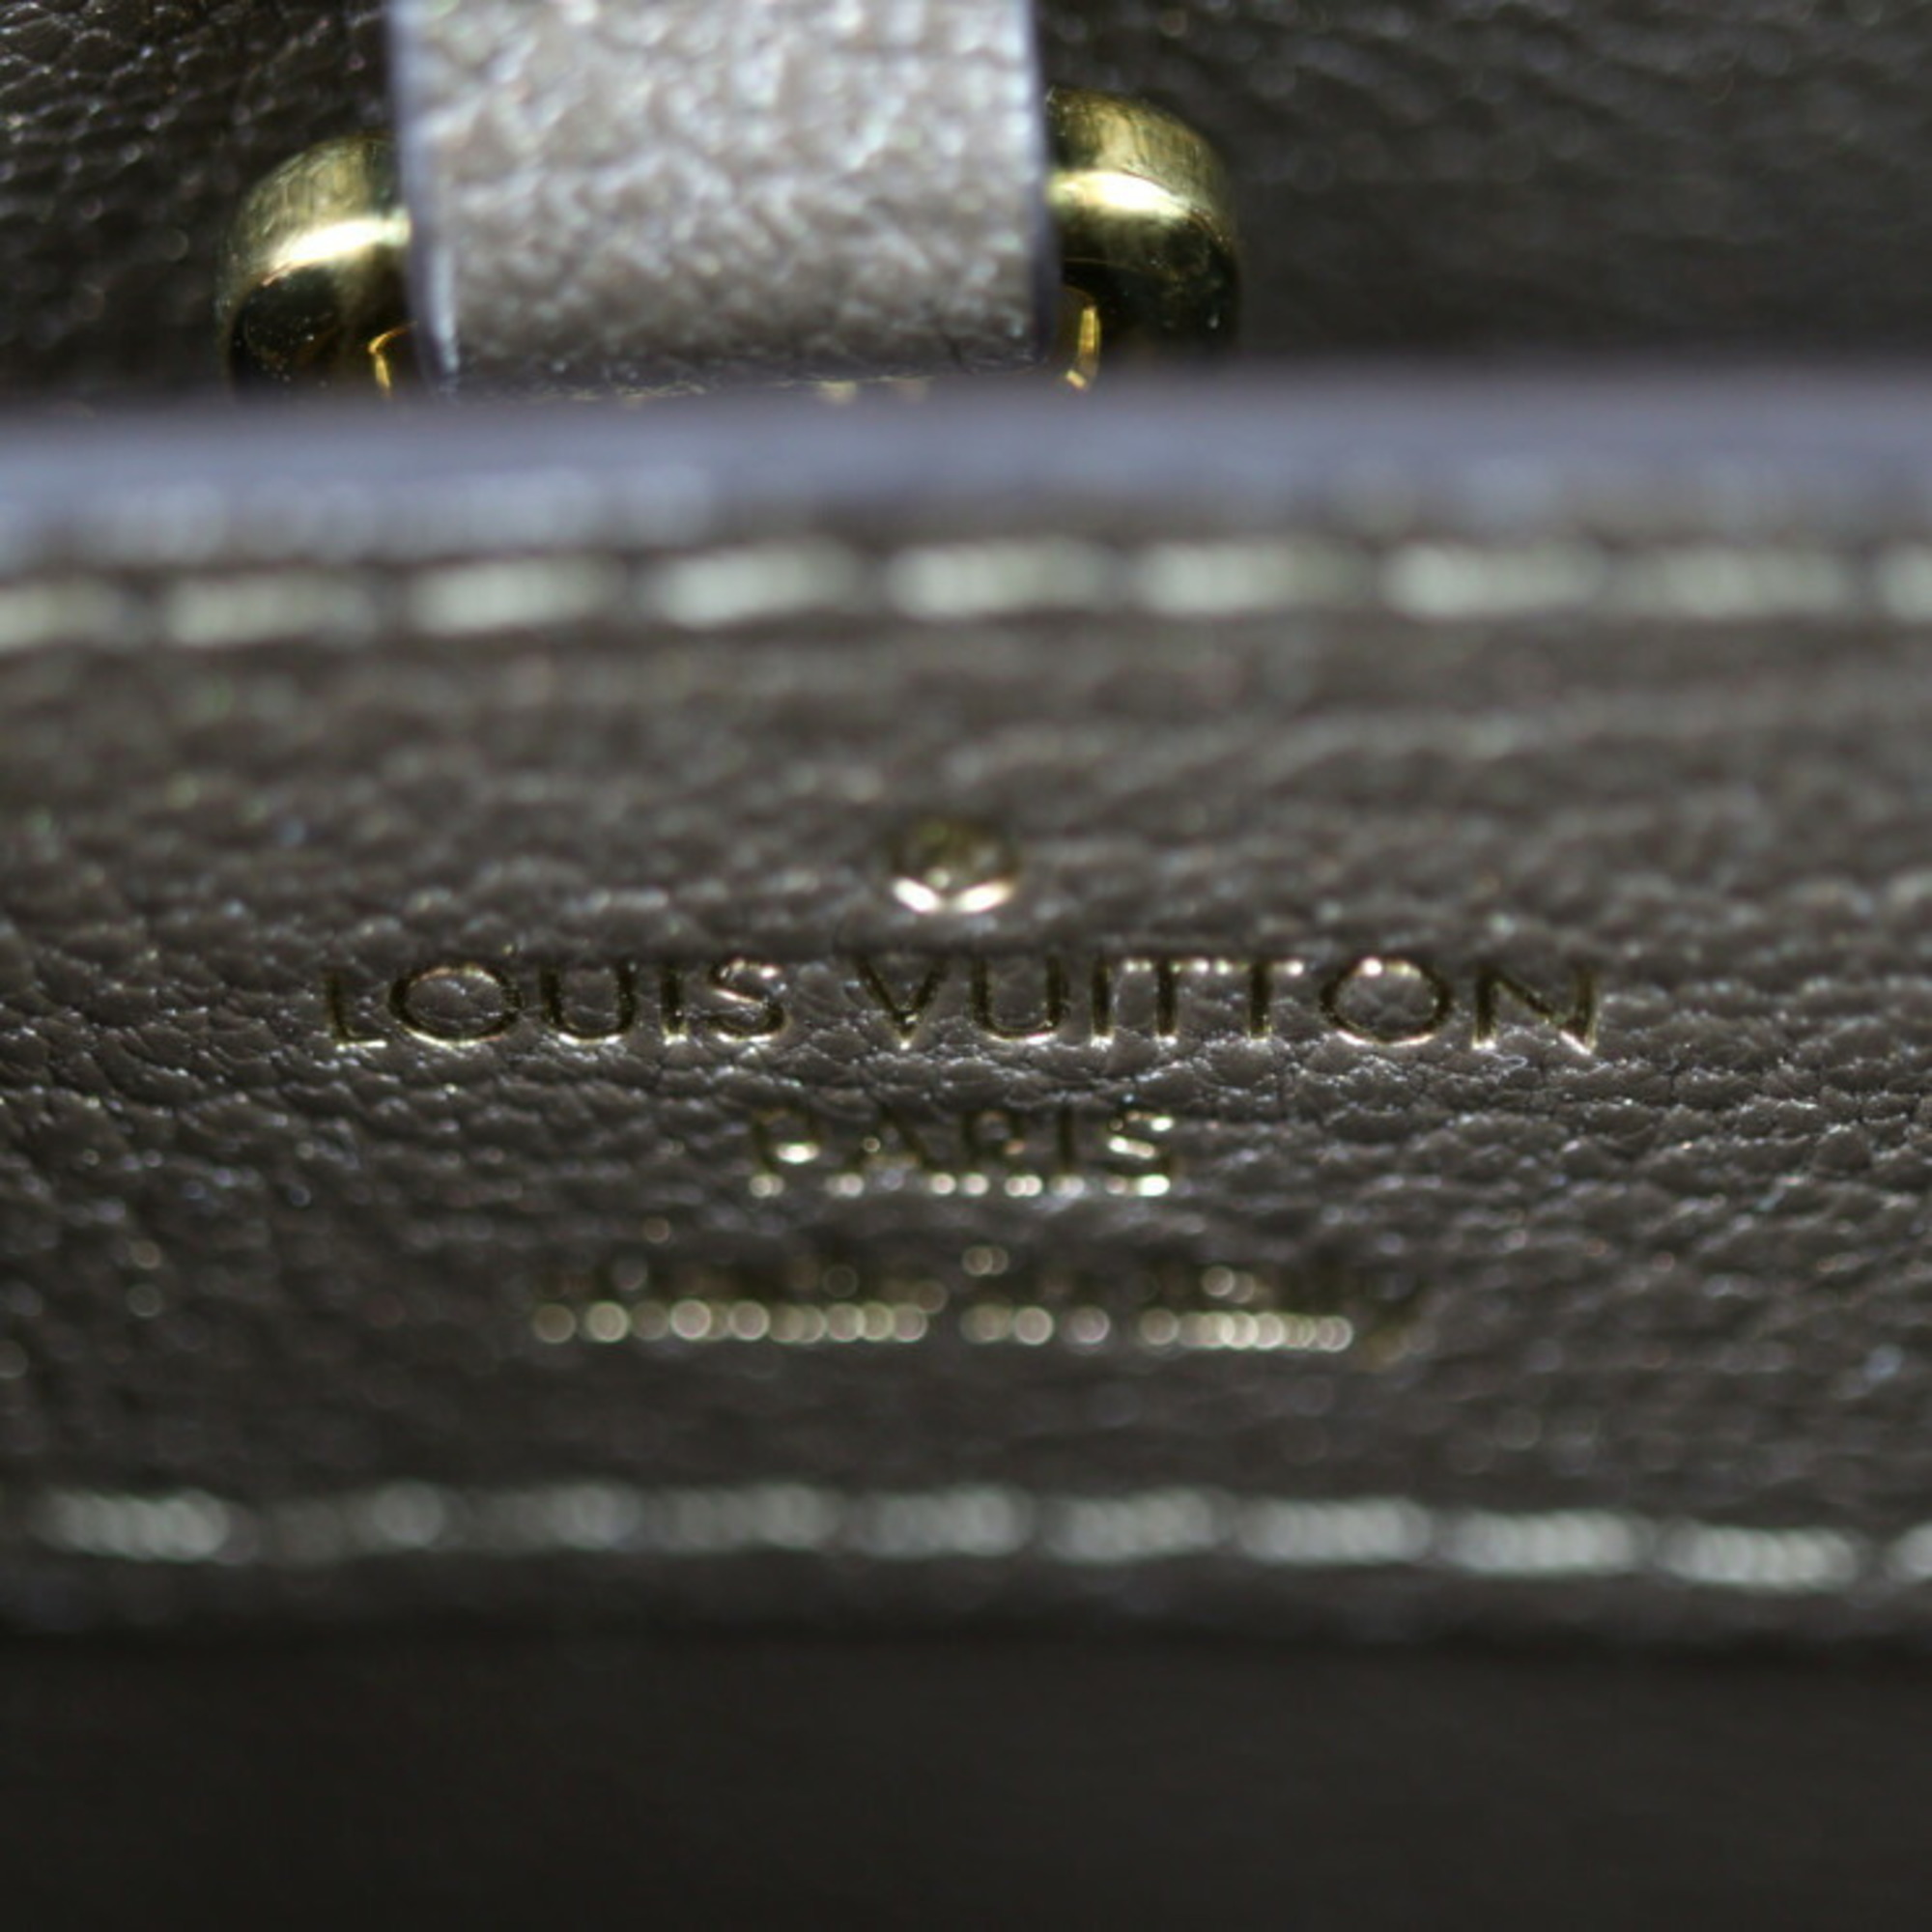 LOUIS VUITTON Louis Vuitton Capucines BB Handbag Leather Mink Fur Olive Beige Shoulder Bag